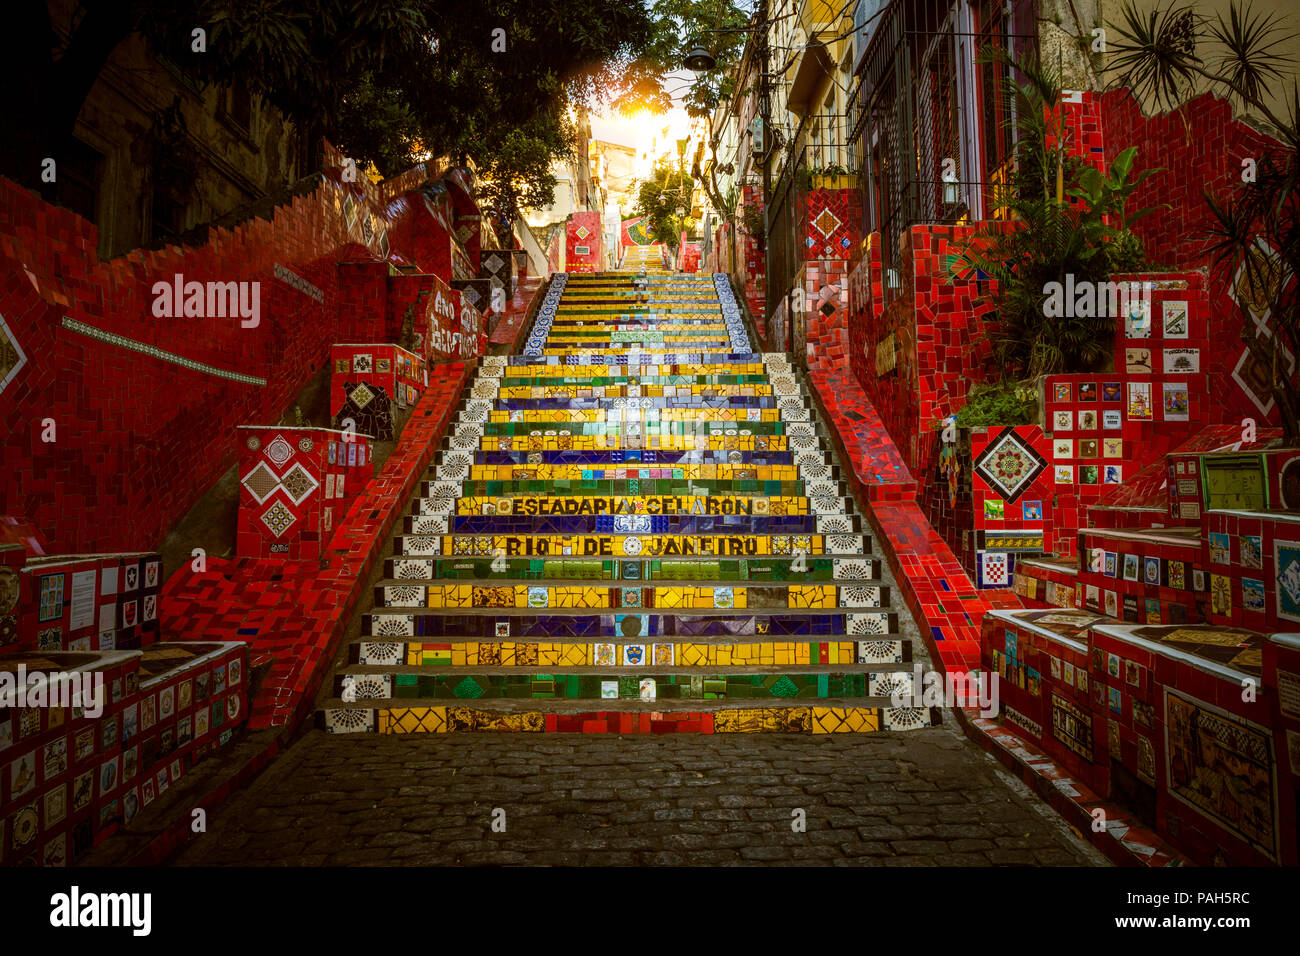 RIO DE JANEIRO - DECEMBER 15, 2017: Colorful Escadaria Selaron created by Chilean artist Jorge Selaron in Rio de Janeiro, Brazil Stock Photo